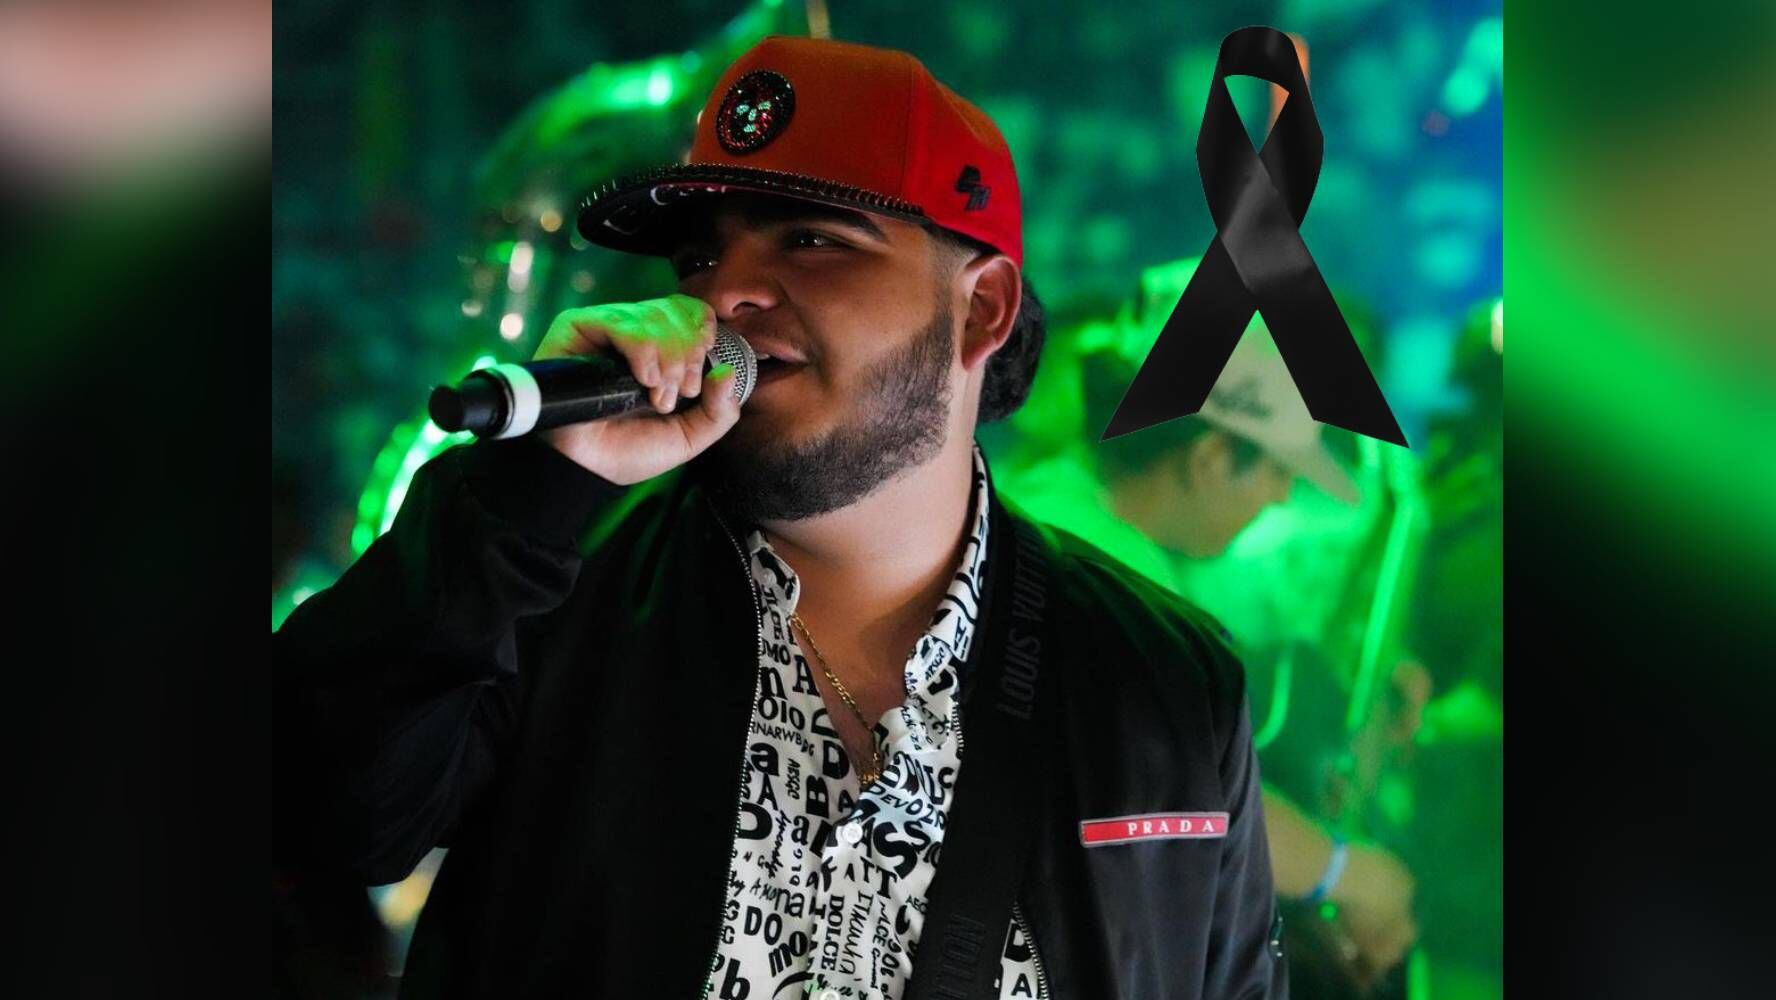 Muere Chuy Montana, cantante de corridos tumbados: Estaba apadrinado por Jesús Ortiz Paz, de Fuerza Regida